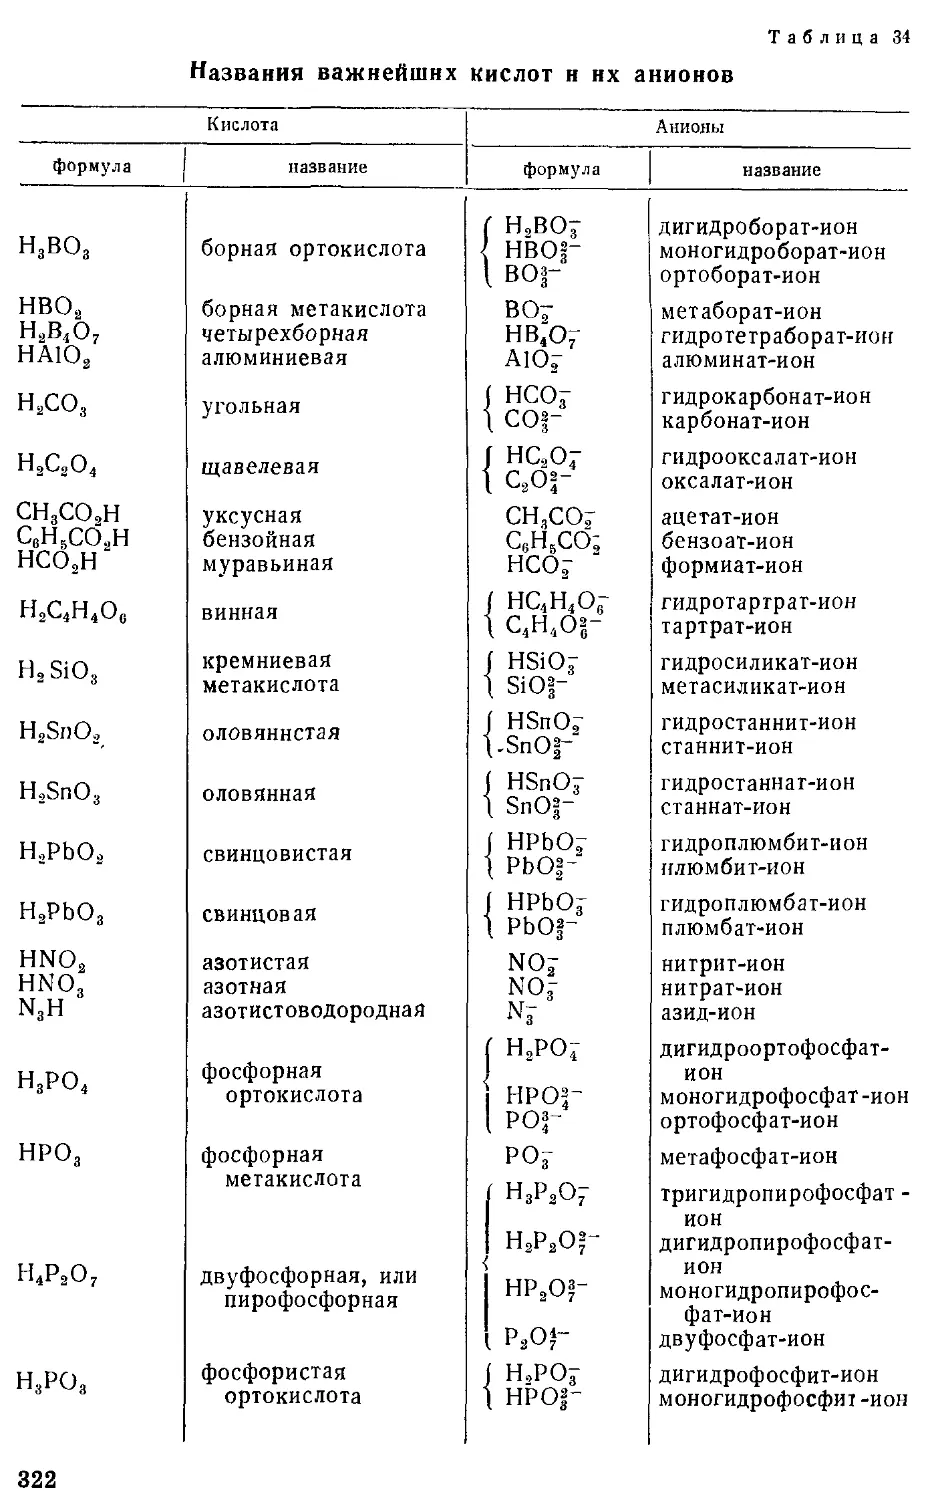 Название катионов и анионов. Номенклатура неорганических соединений таблица. IUPAC номенклатура неорганических соединений. Таблица названий кислот и их солей. Таблица формул кислот.